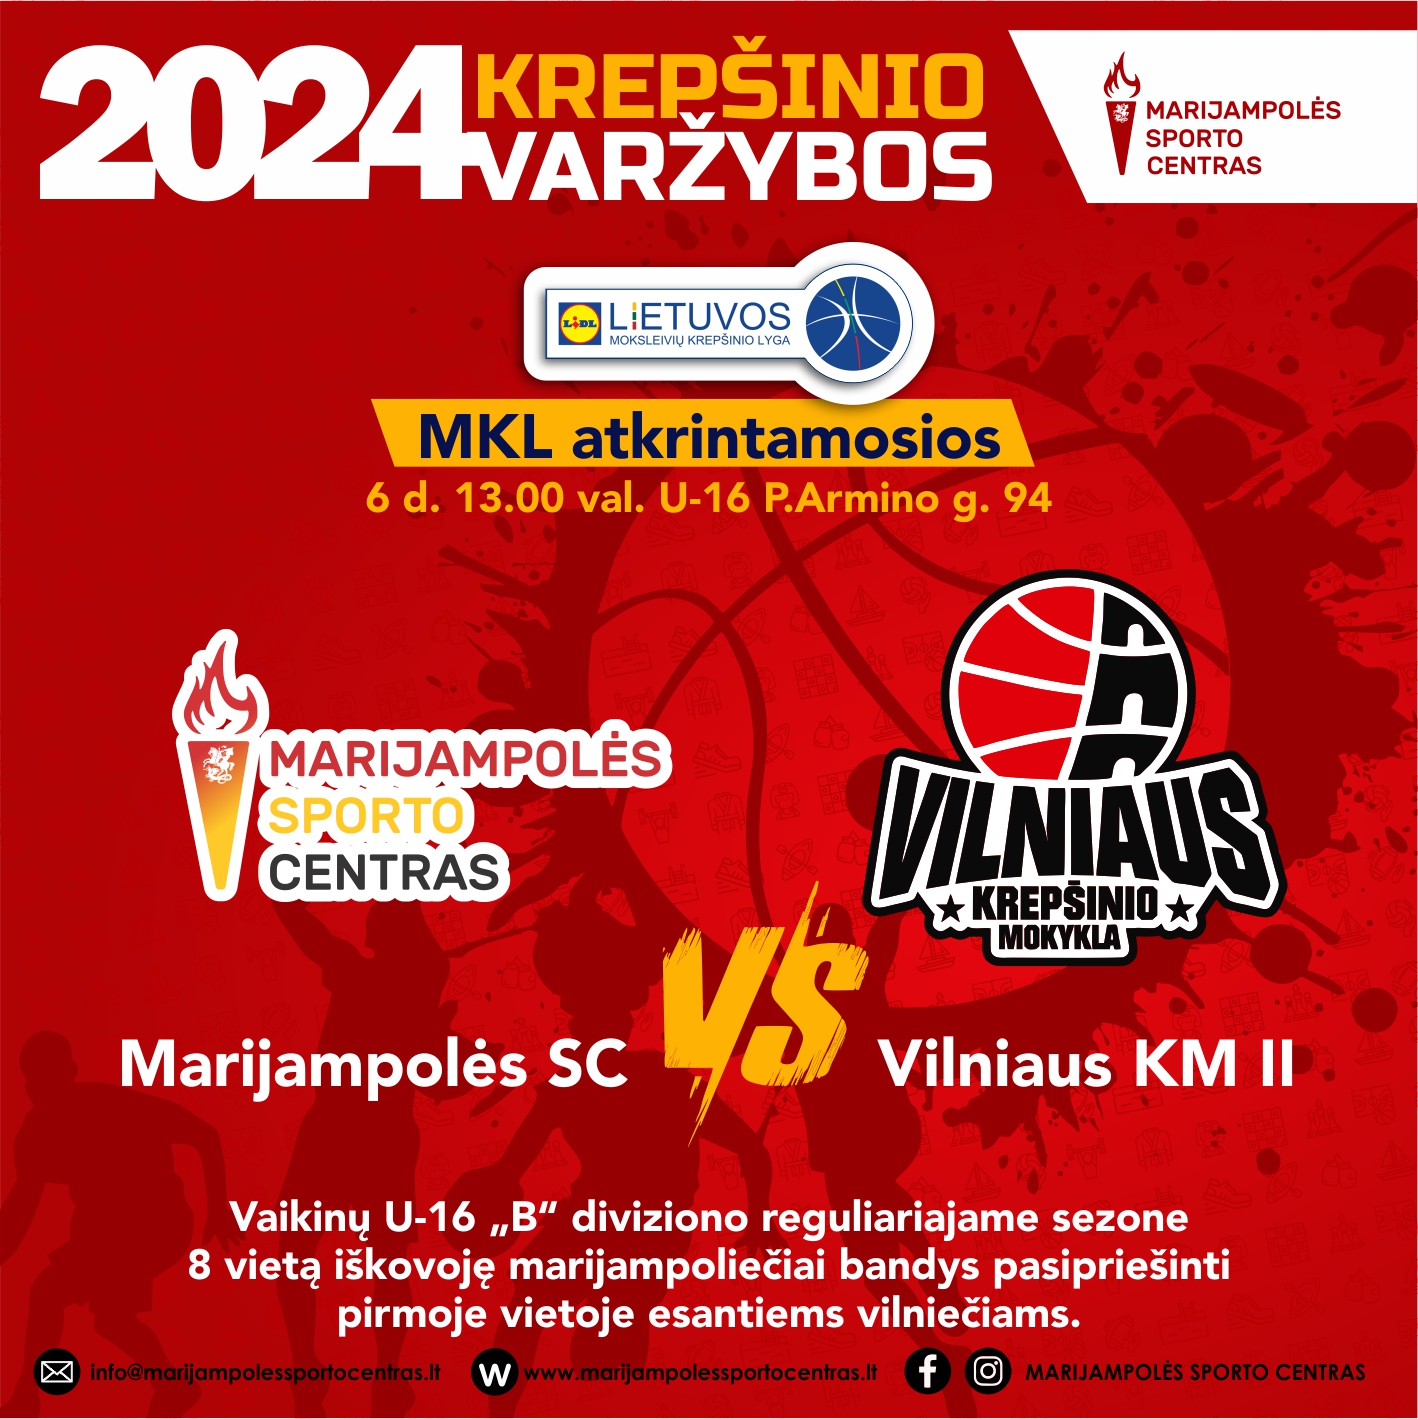 MSC - Vilniaus KM